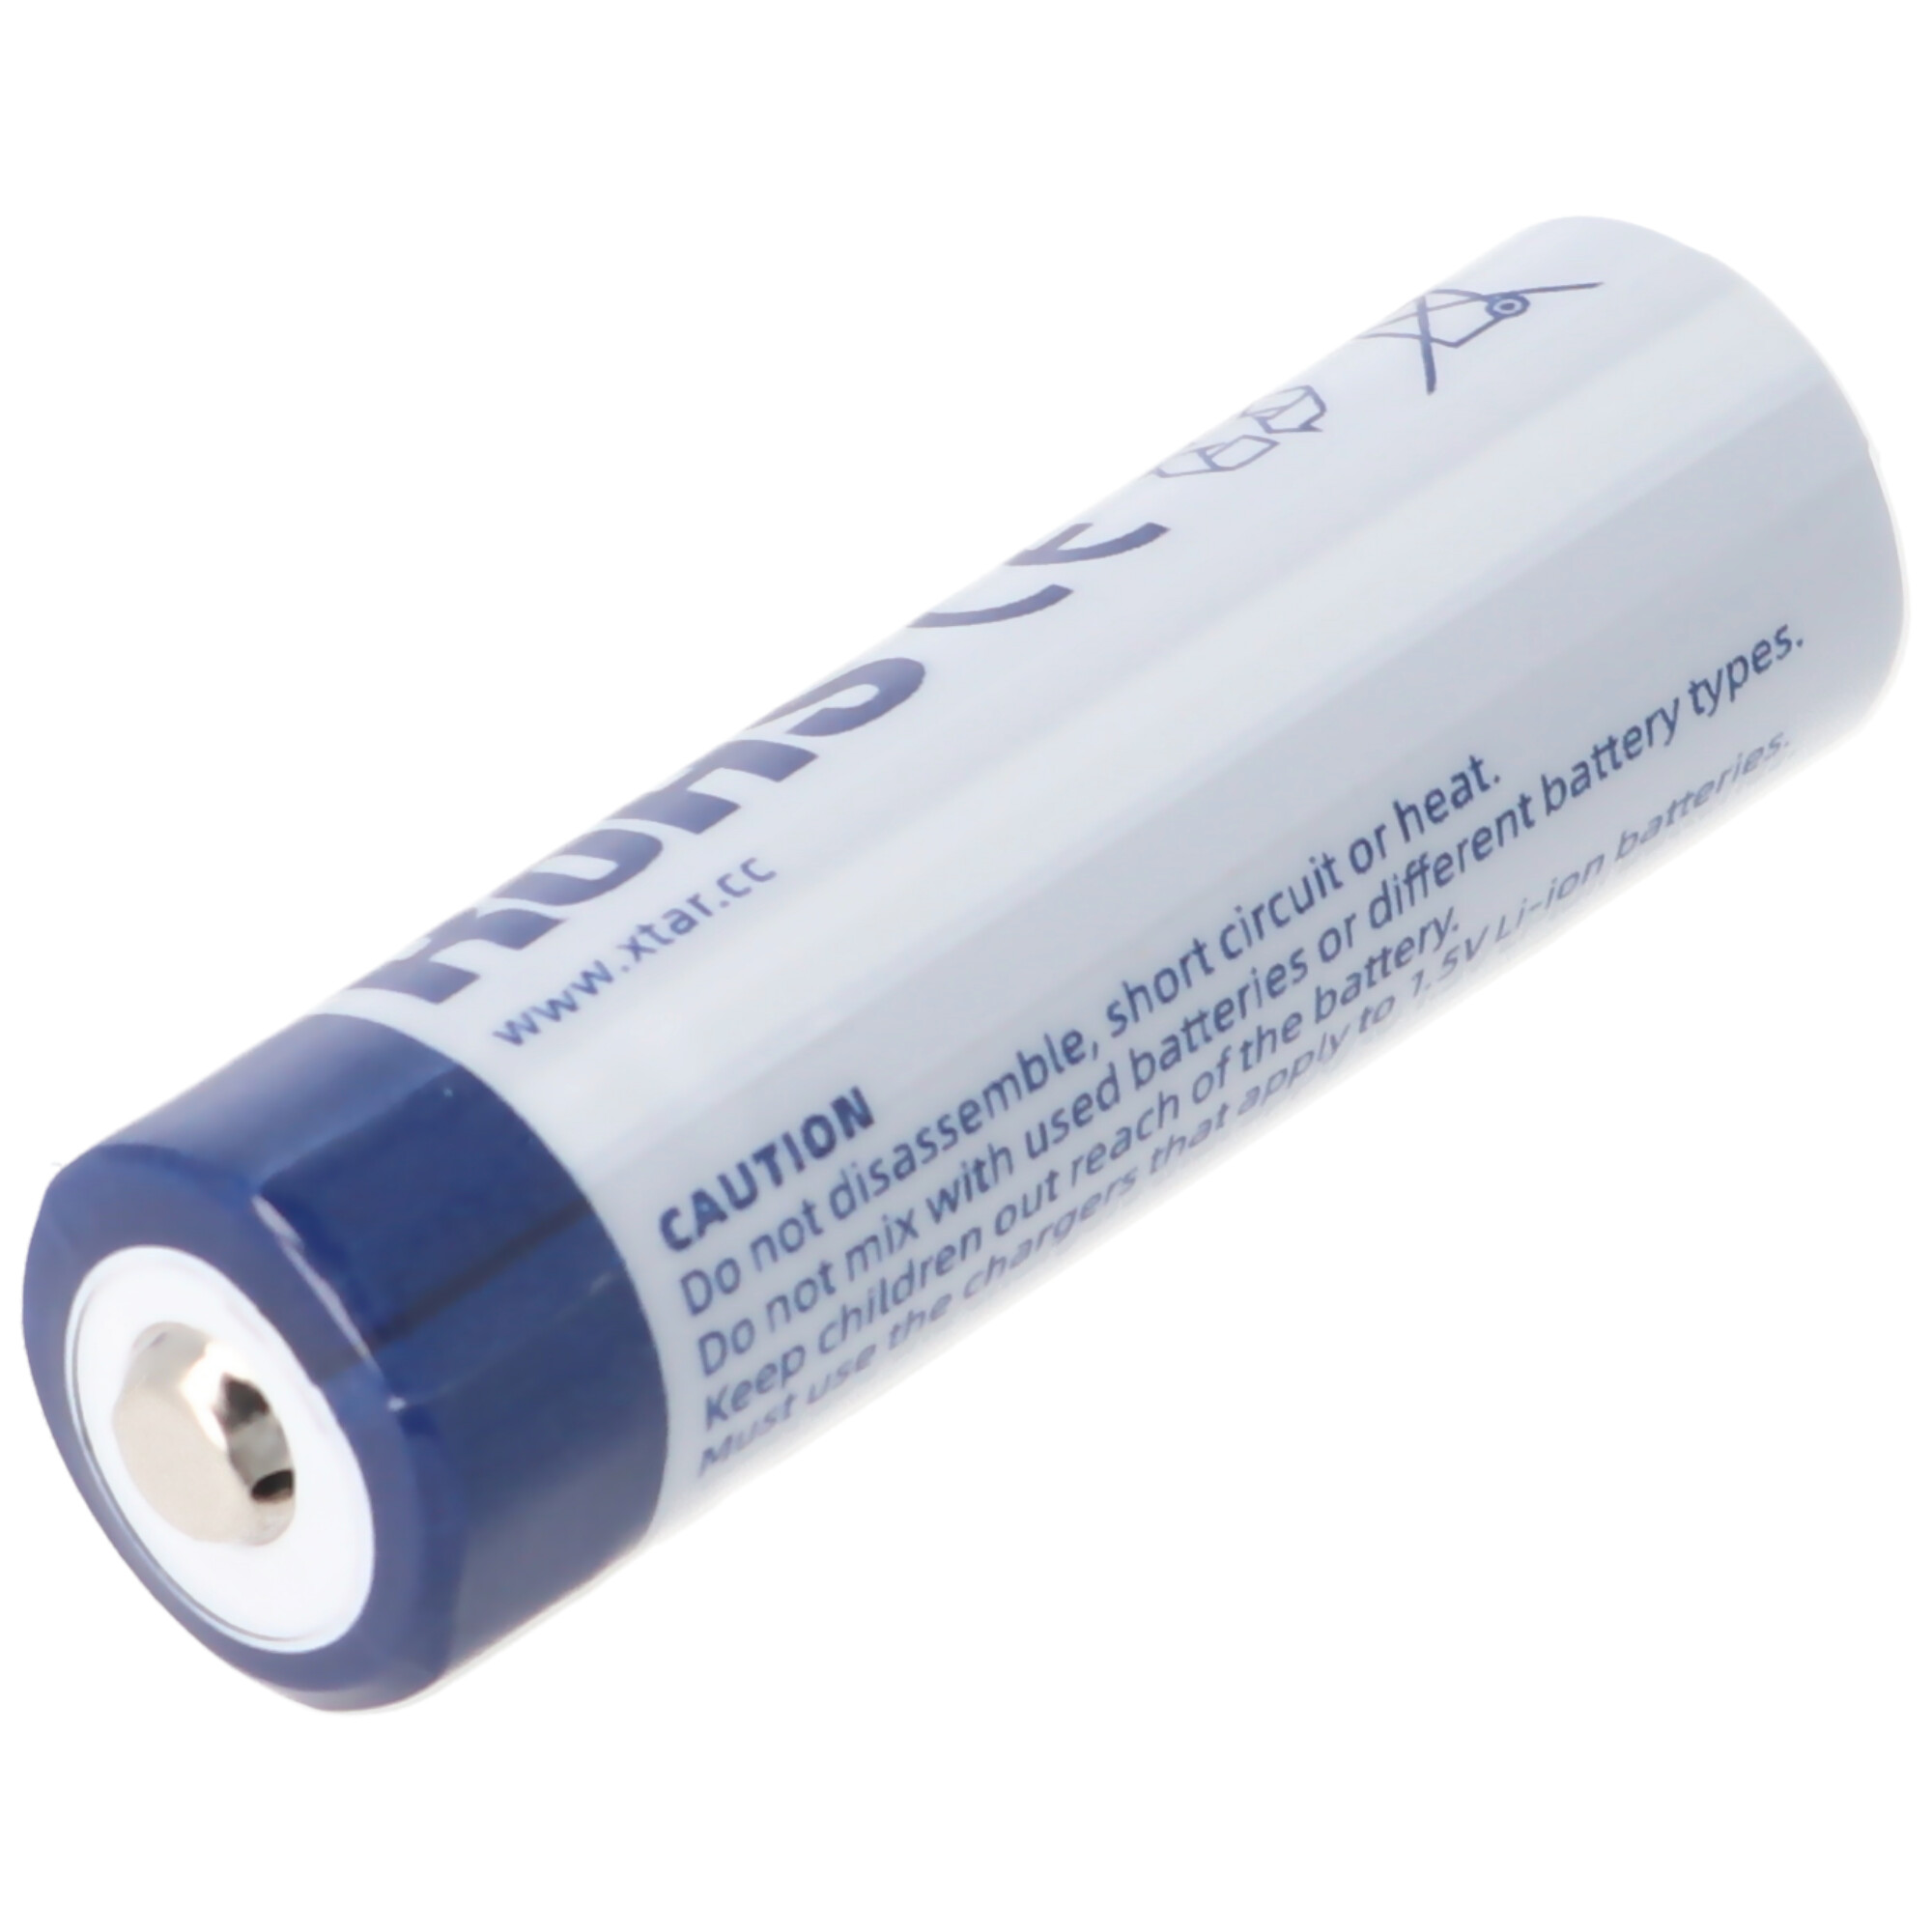 Batterie au lithium-ion AA 1.5V 3300mWh généralement 2000mAh rechargeable  uniquement avec un chargeur spécial, Li-ion 14500, Batteries par taille, Batteries